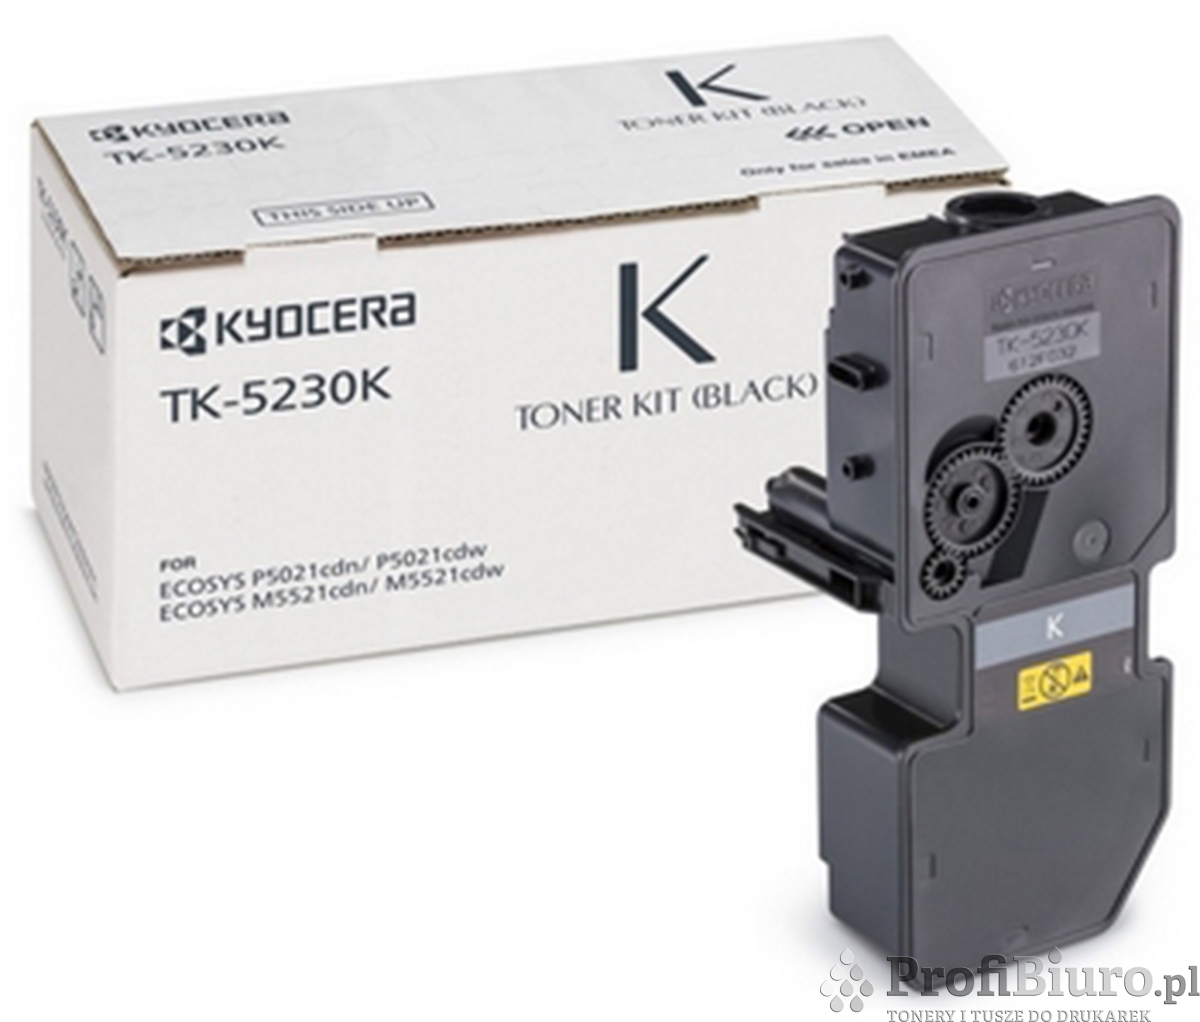 Toner Kyocera TK-5230K Black do drukarek (Oryginalny) [2.6k]